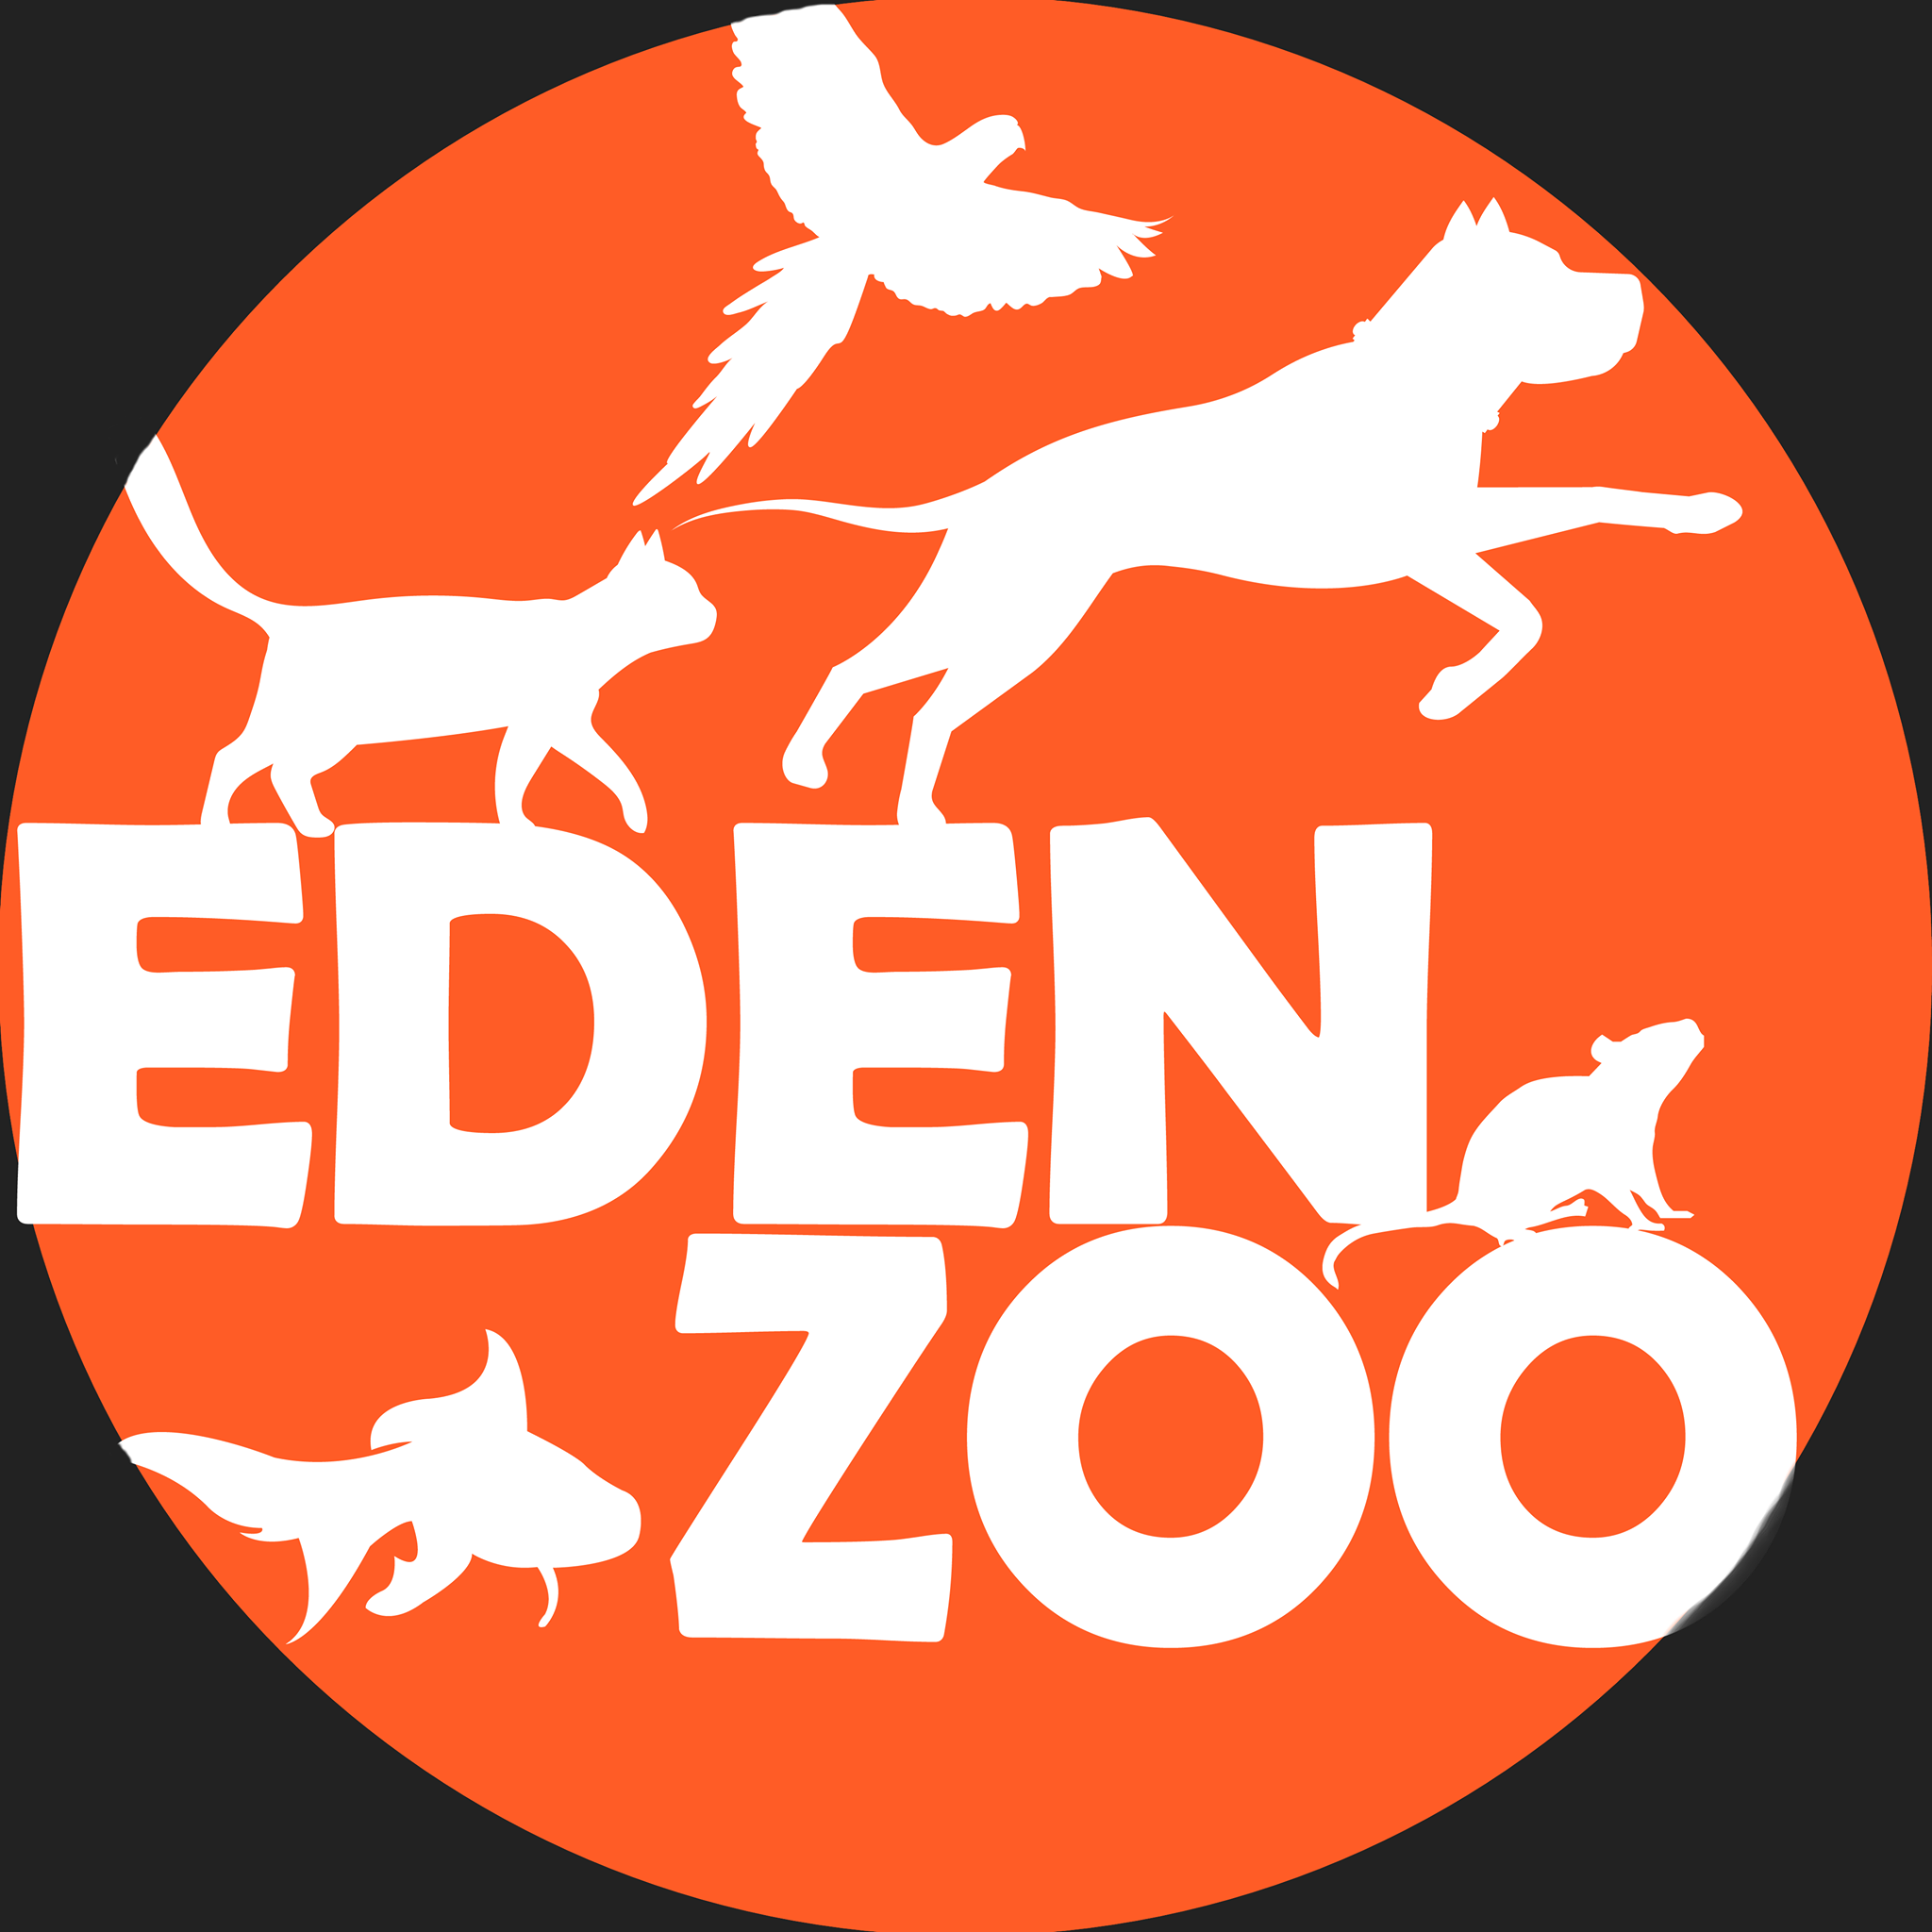 Eden ZOO - Leça Da Palmeira